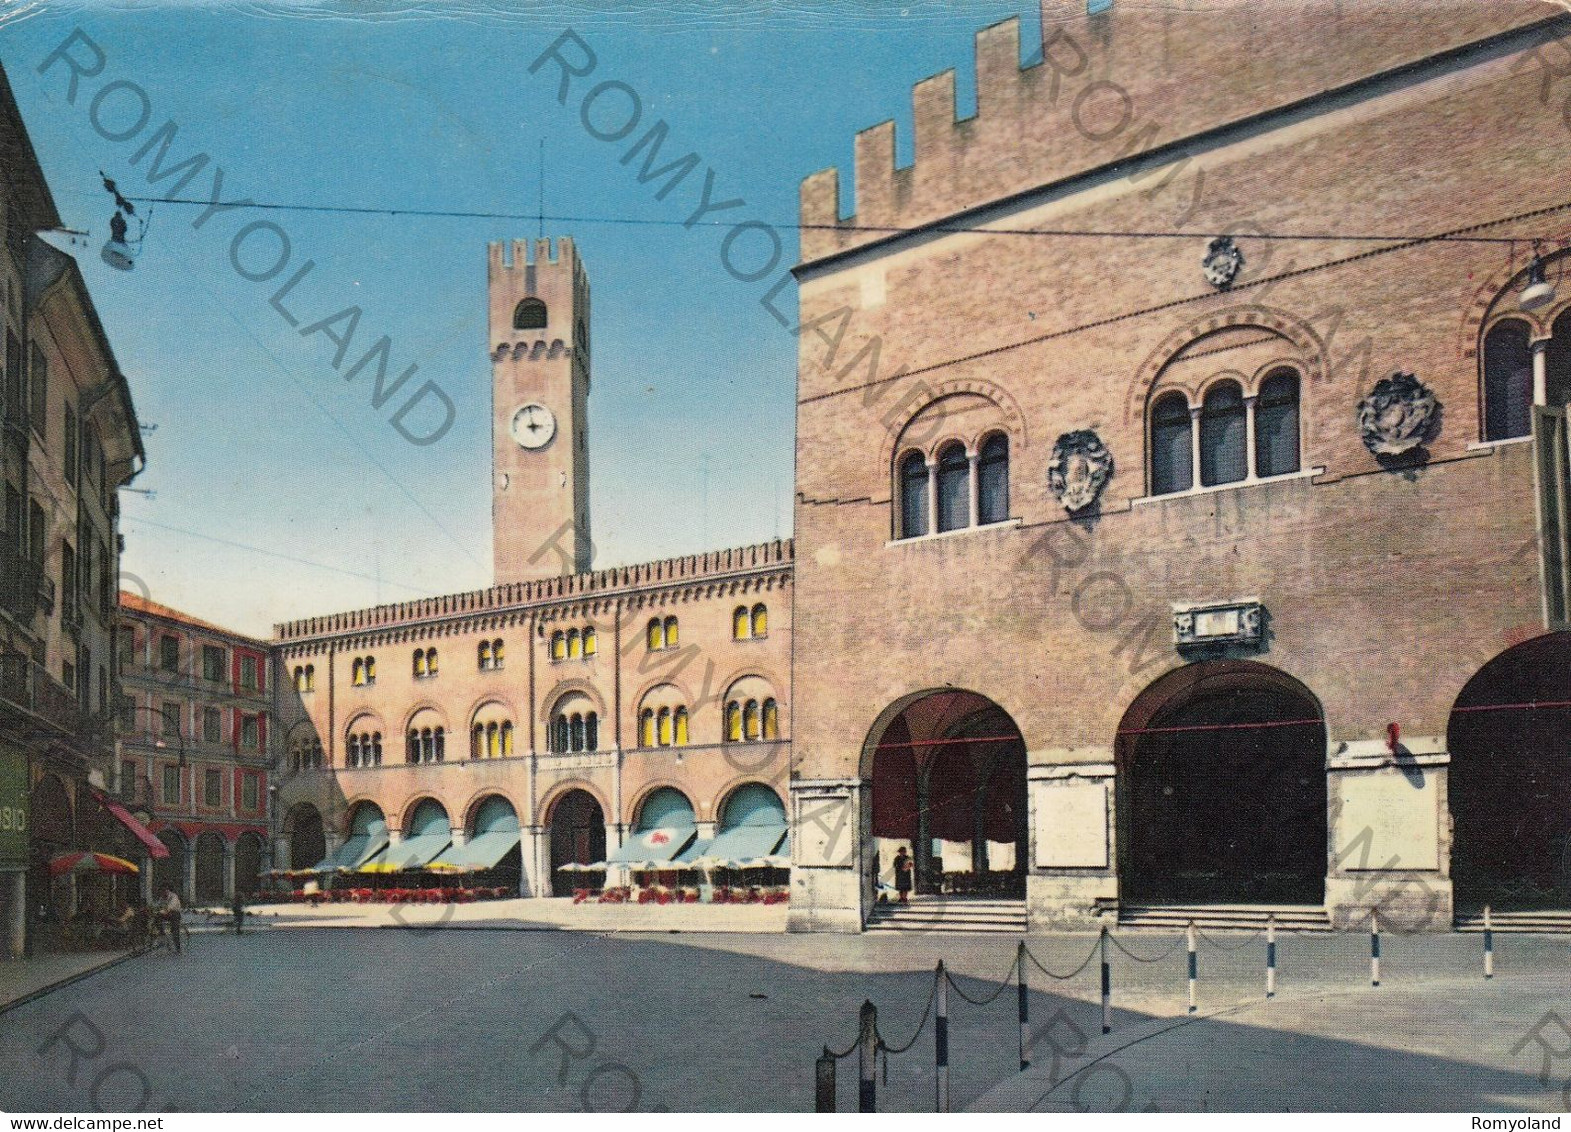 CARTOLINA  TREVISO,VENETO,PIAZZA DEI SIGNORI,STORIA,MEMORIA,RELIGIONE,IMPERO ROMANO,BOLLO STACCATO,VIAGGIATA 1960 - Treviso